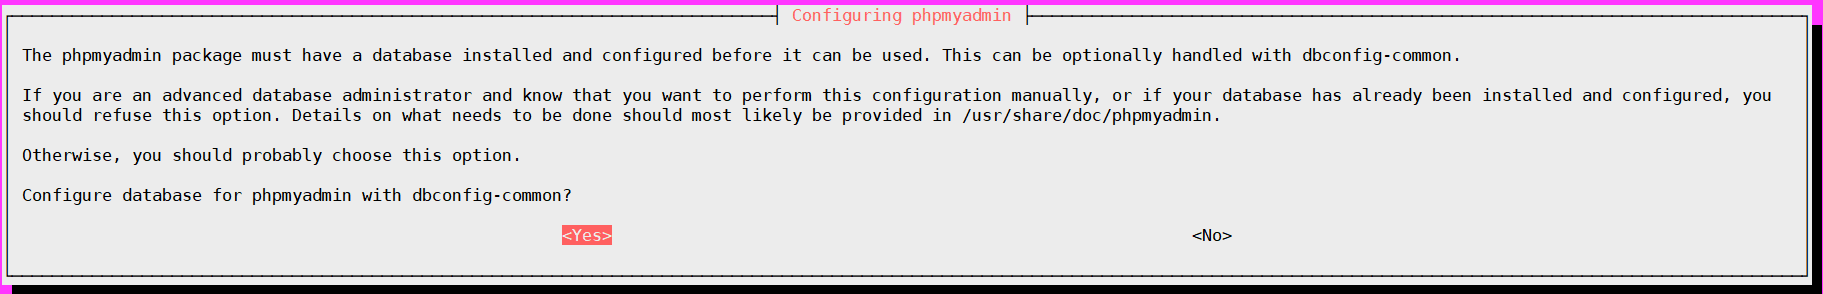 configuration phpmyadmin ubuntu